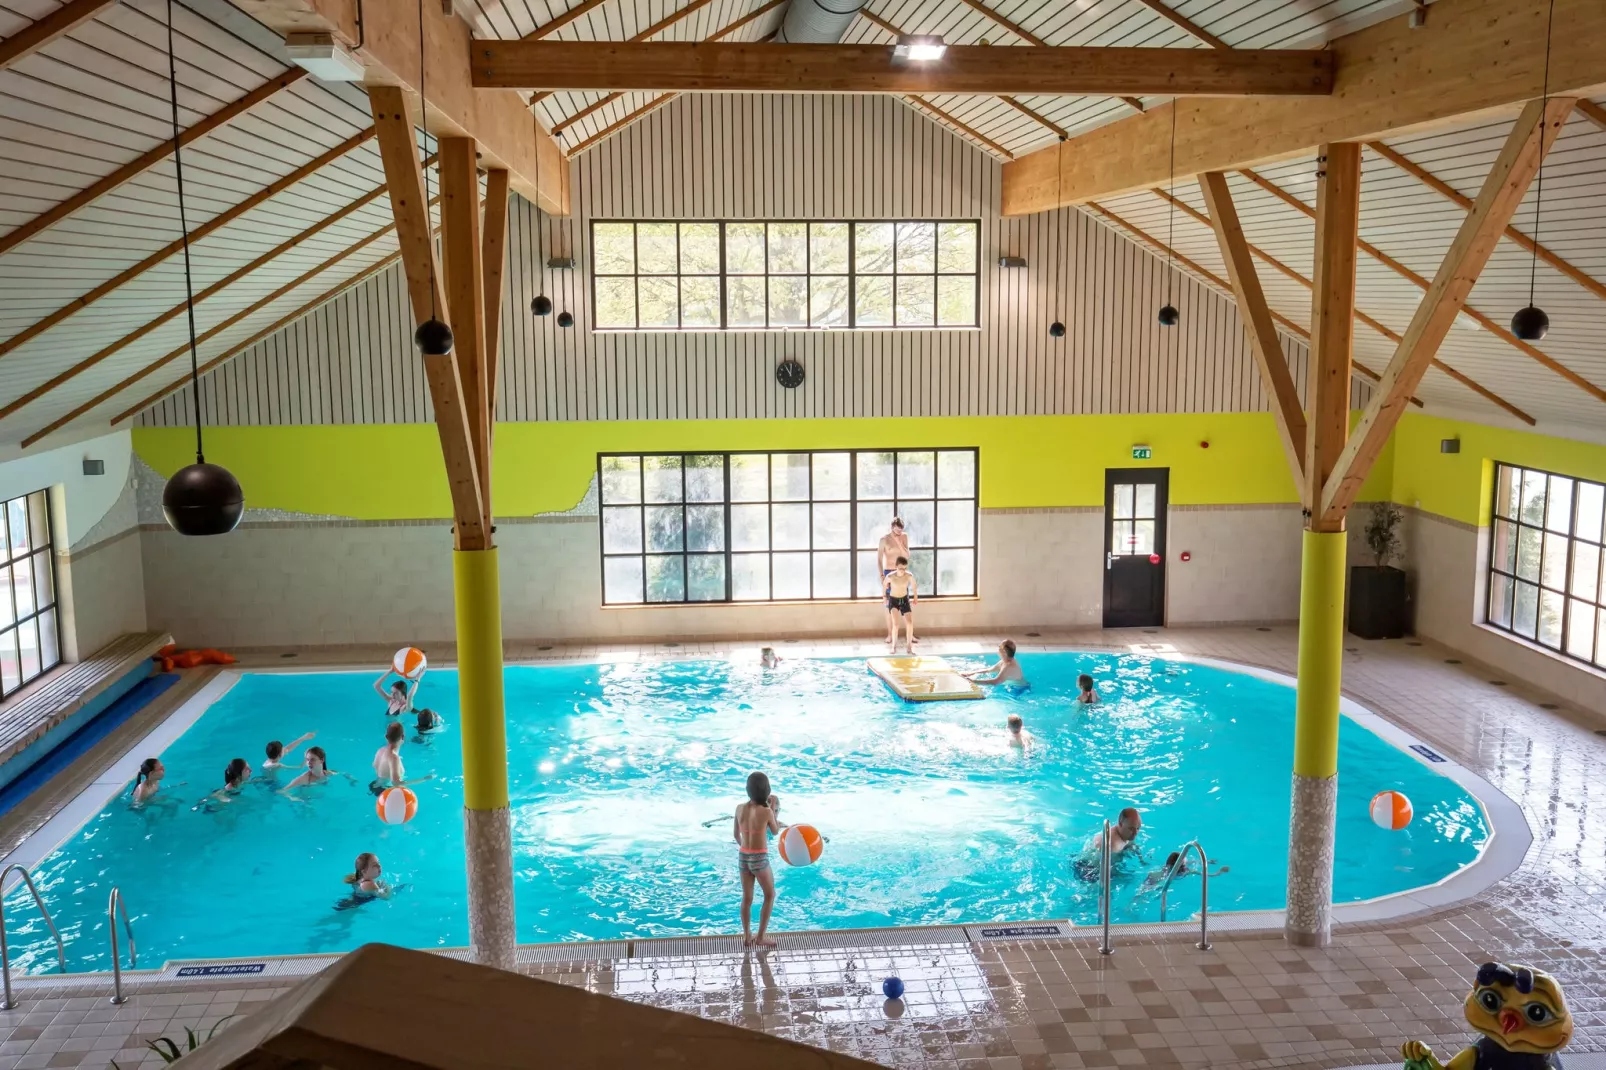 Resort Limburg 6-Parkfaciliteiten